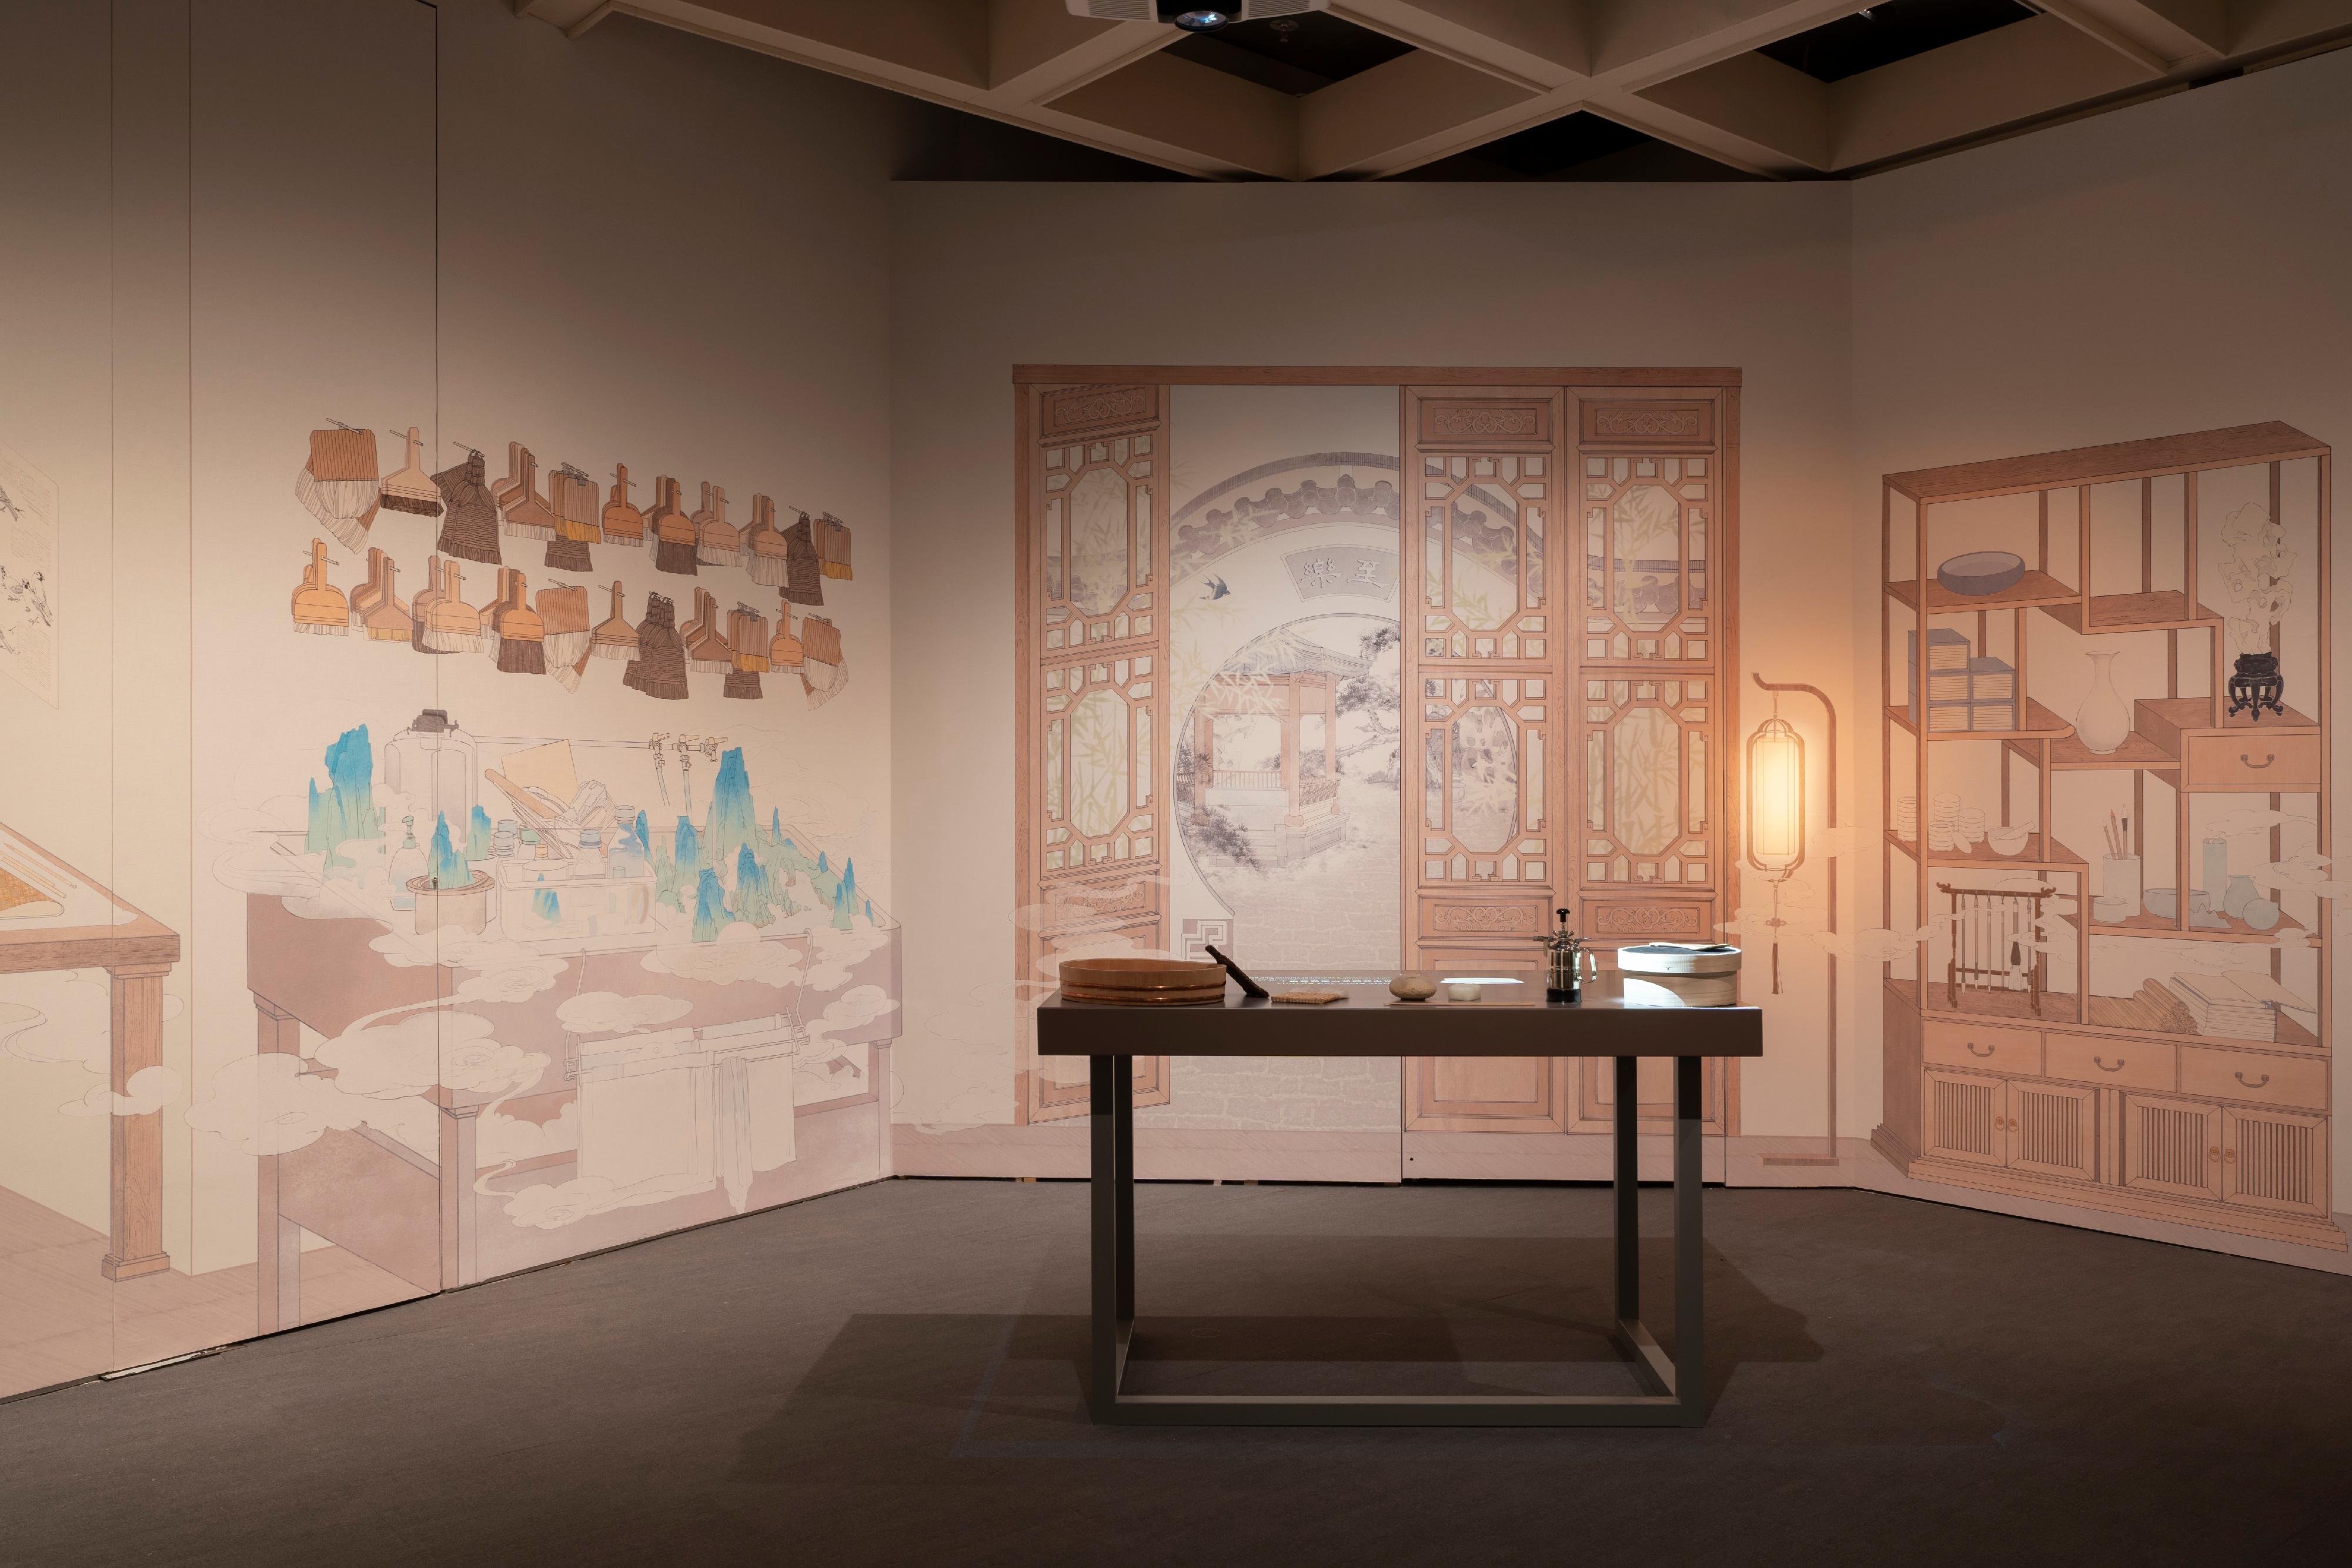 香港艺术馆举办展览「另眼相看──中国书画的装裱与保护」，透过艺术与科学的角度，分析和拆解中国书画，让市民窥探博物馆幕后的修复和保护工作。展览今日（三月二十二日）起在香港艺术馆展出。